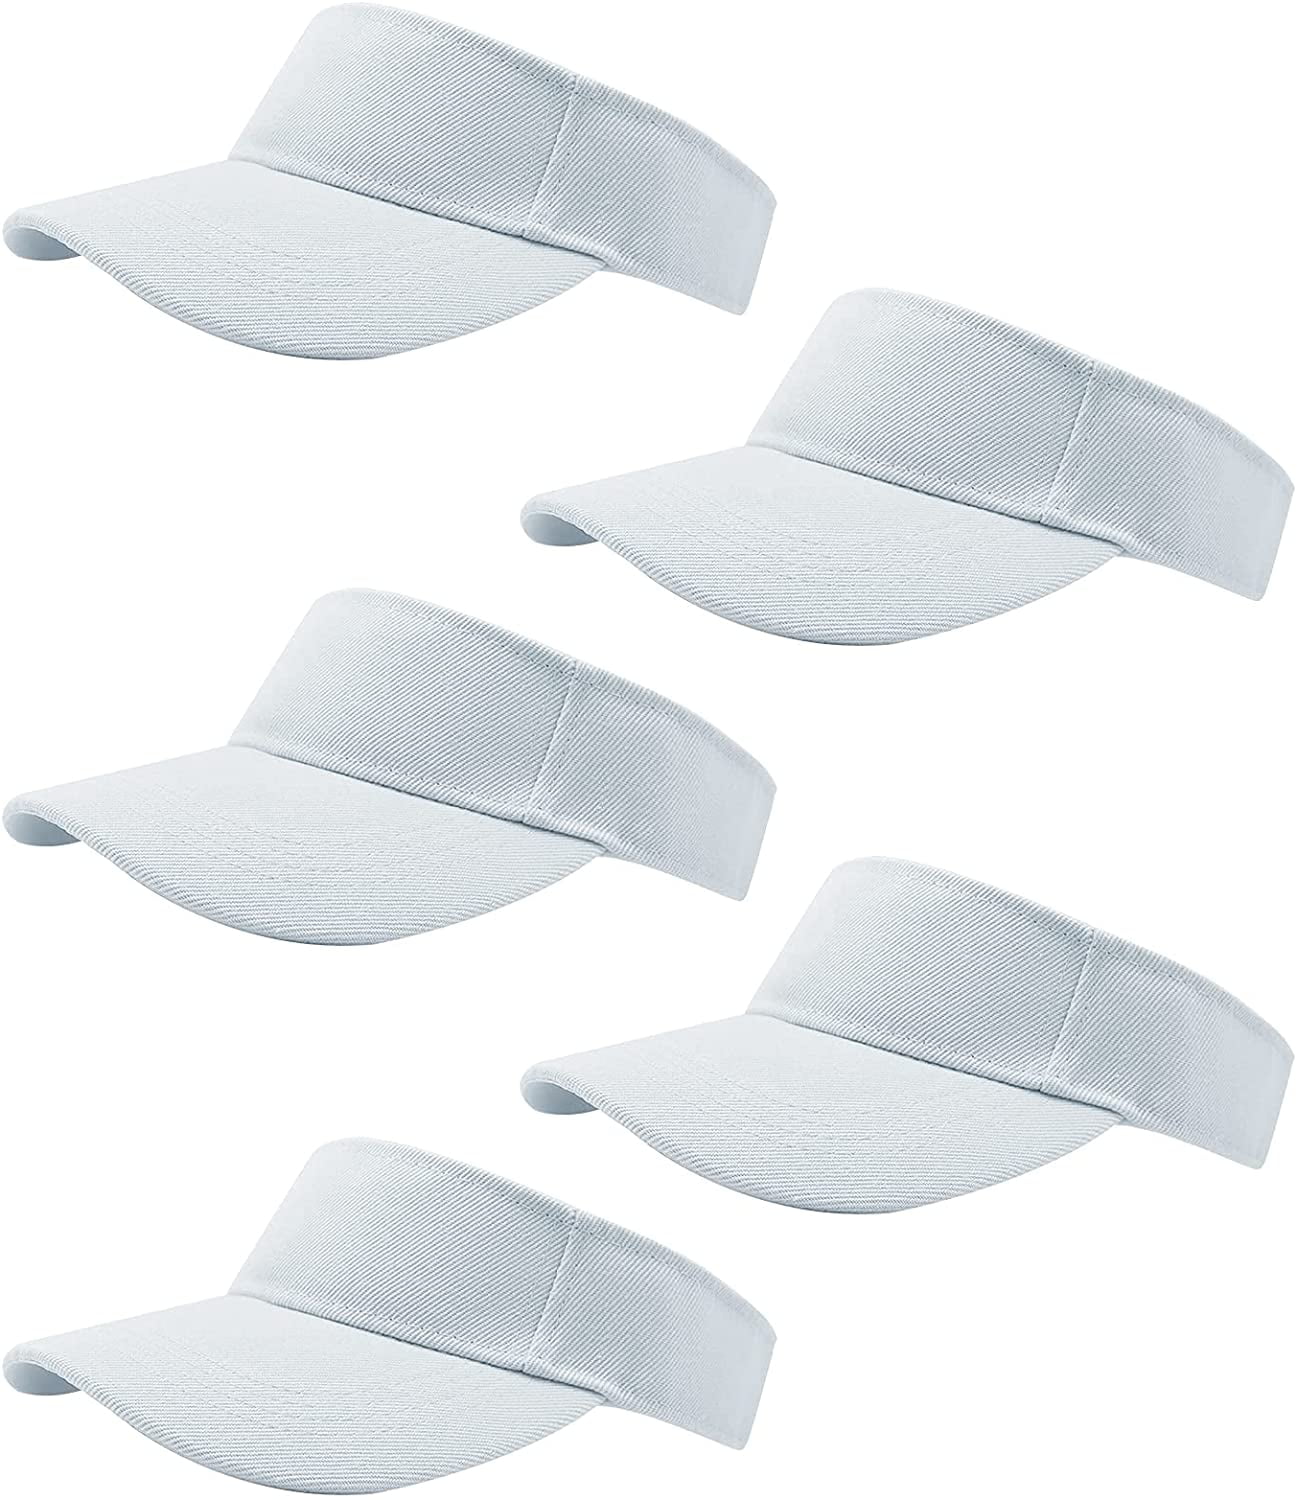 5 Pieces of Adjustable Sport Visors Sun Visor Hats Cap Visors for 